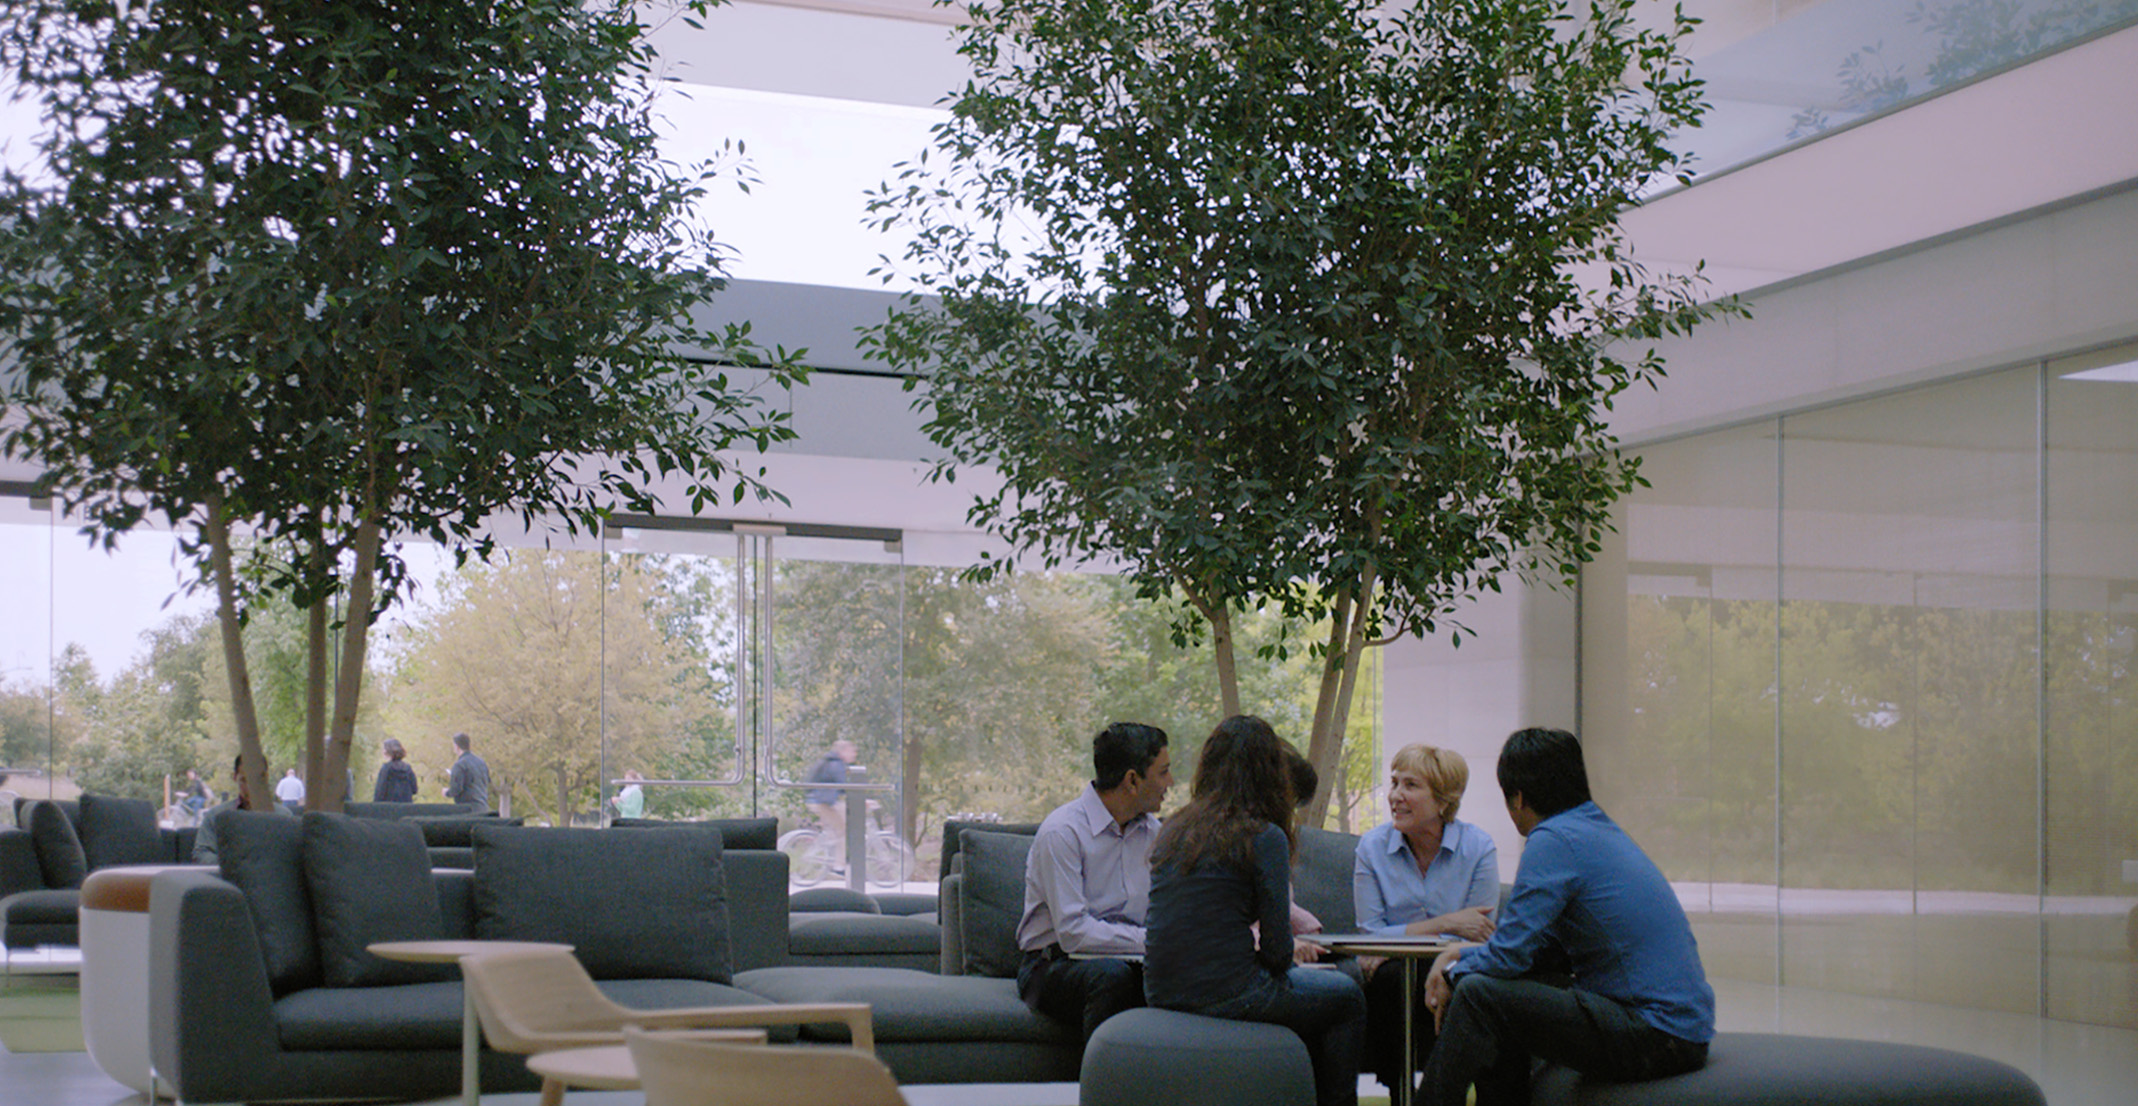 Giulia, responsable del equipo de procesamiento del lenguaje natural, está sentada en una mesa junto a otros empleados de Apple.